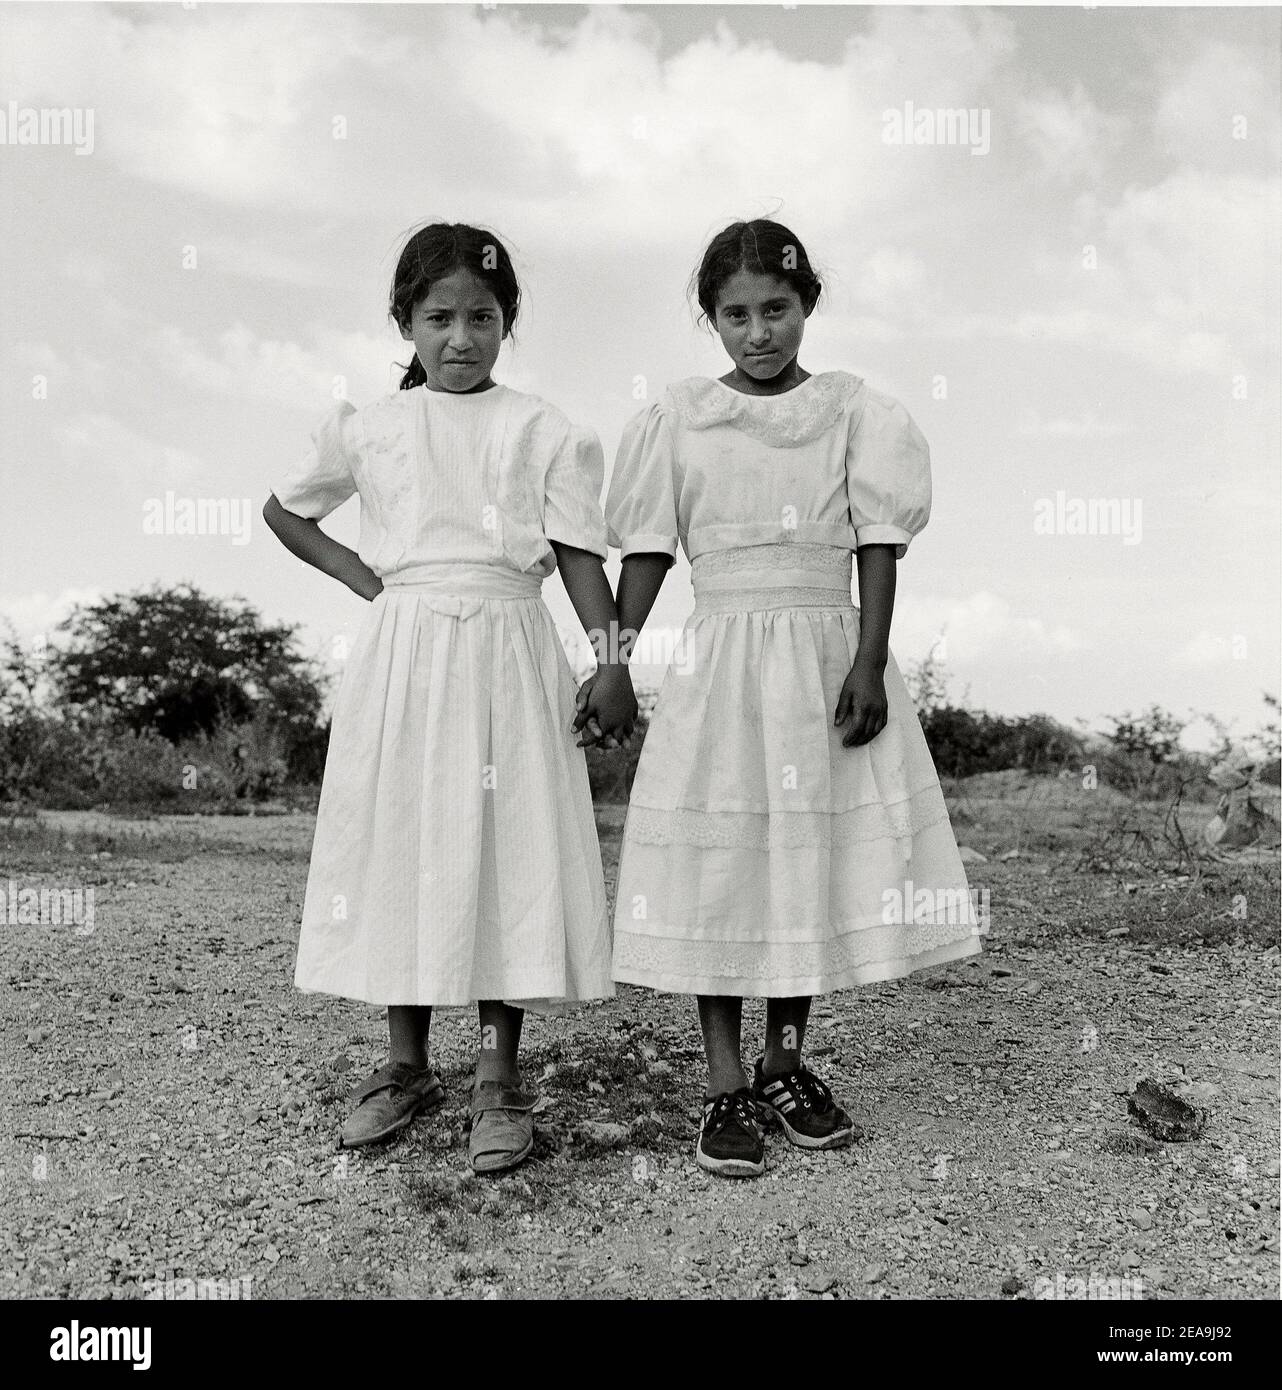 Porträt von glücklichen Zwillingsschwestern in weißem Kleid Lara, Staat Lara, Venezuela, Südamerika. Stockfoto